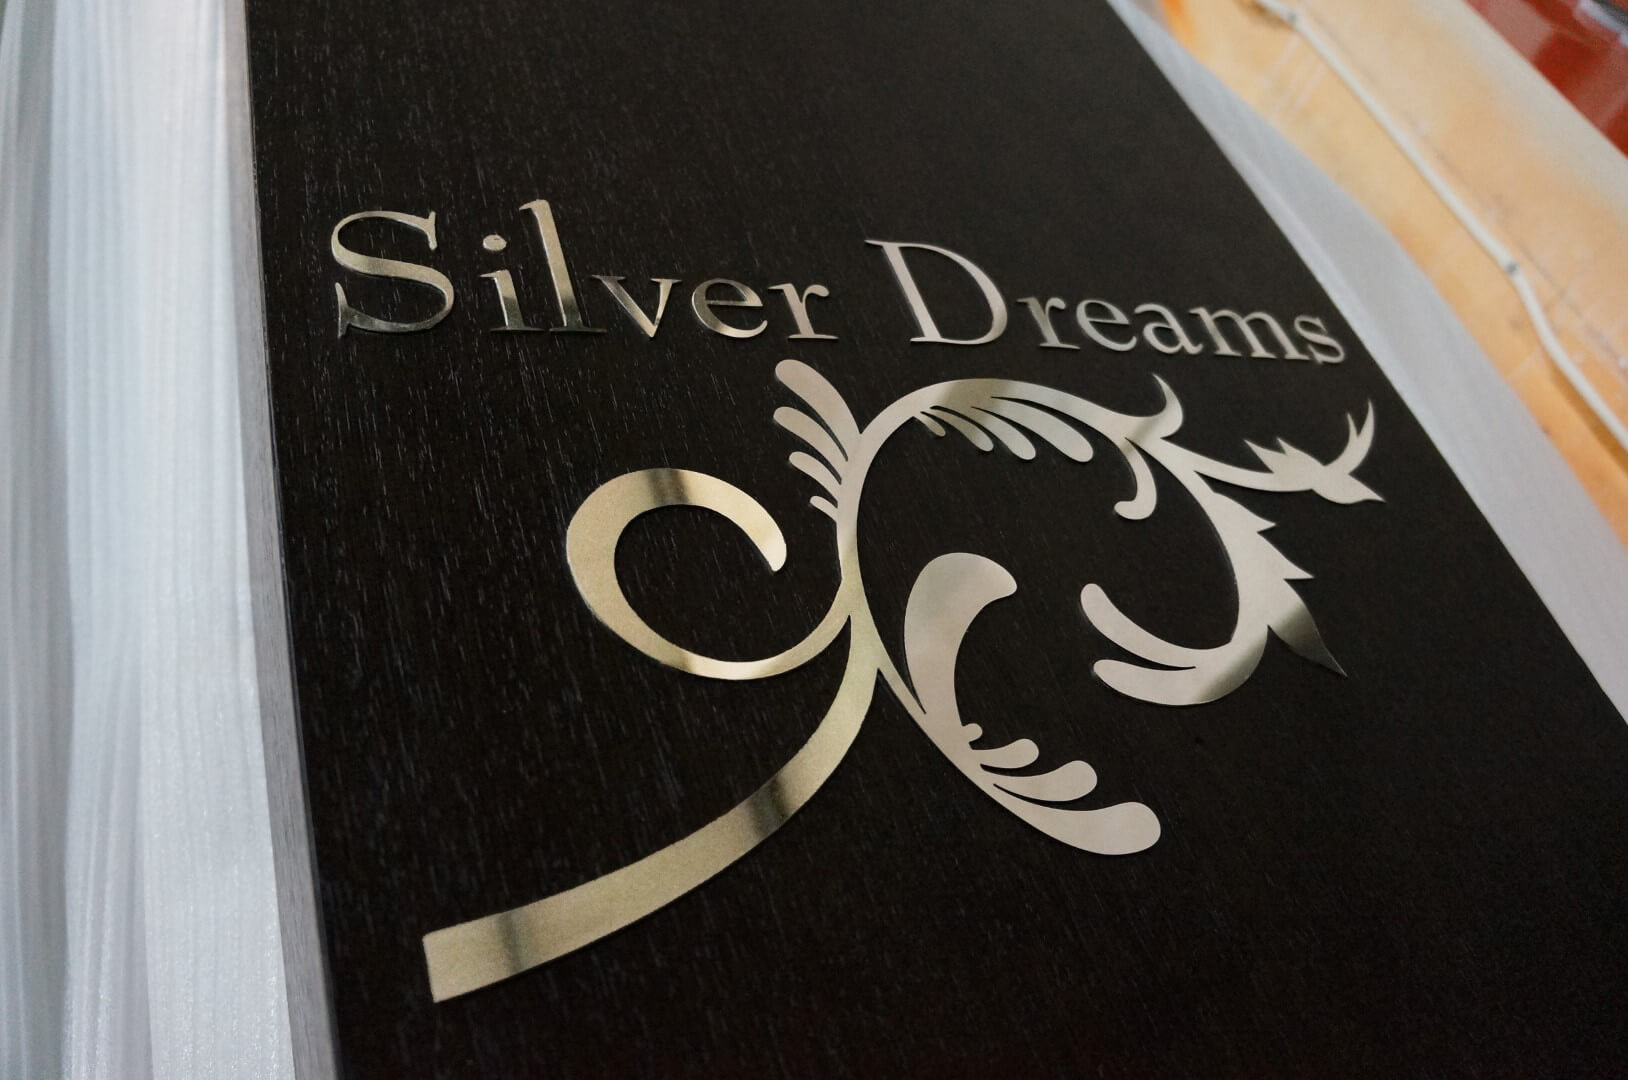 Silver Dreams board.